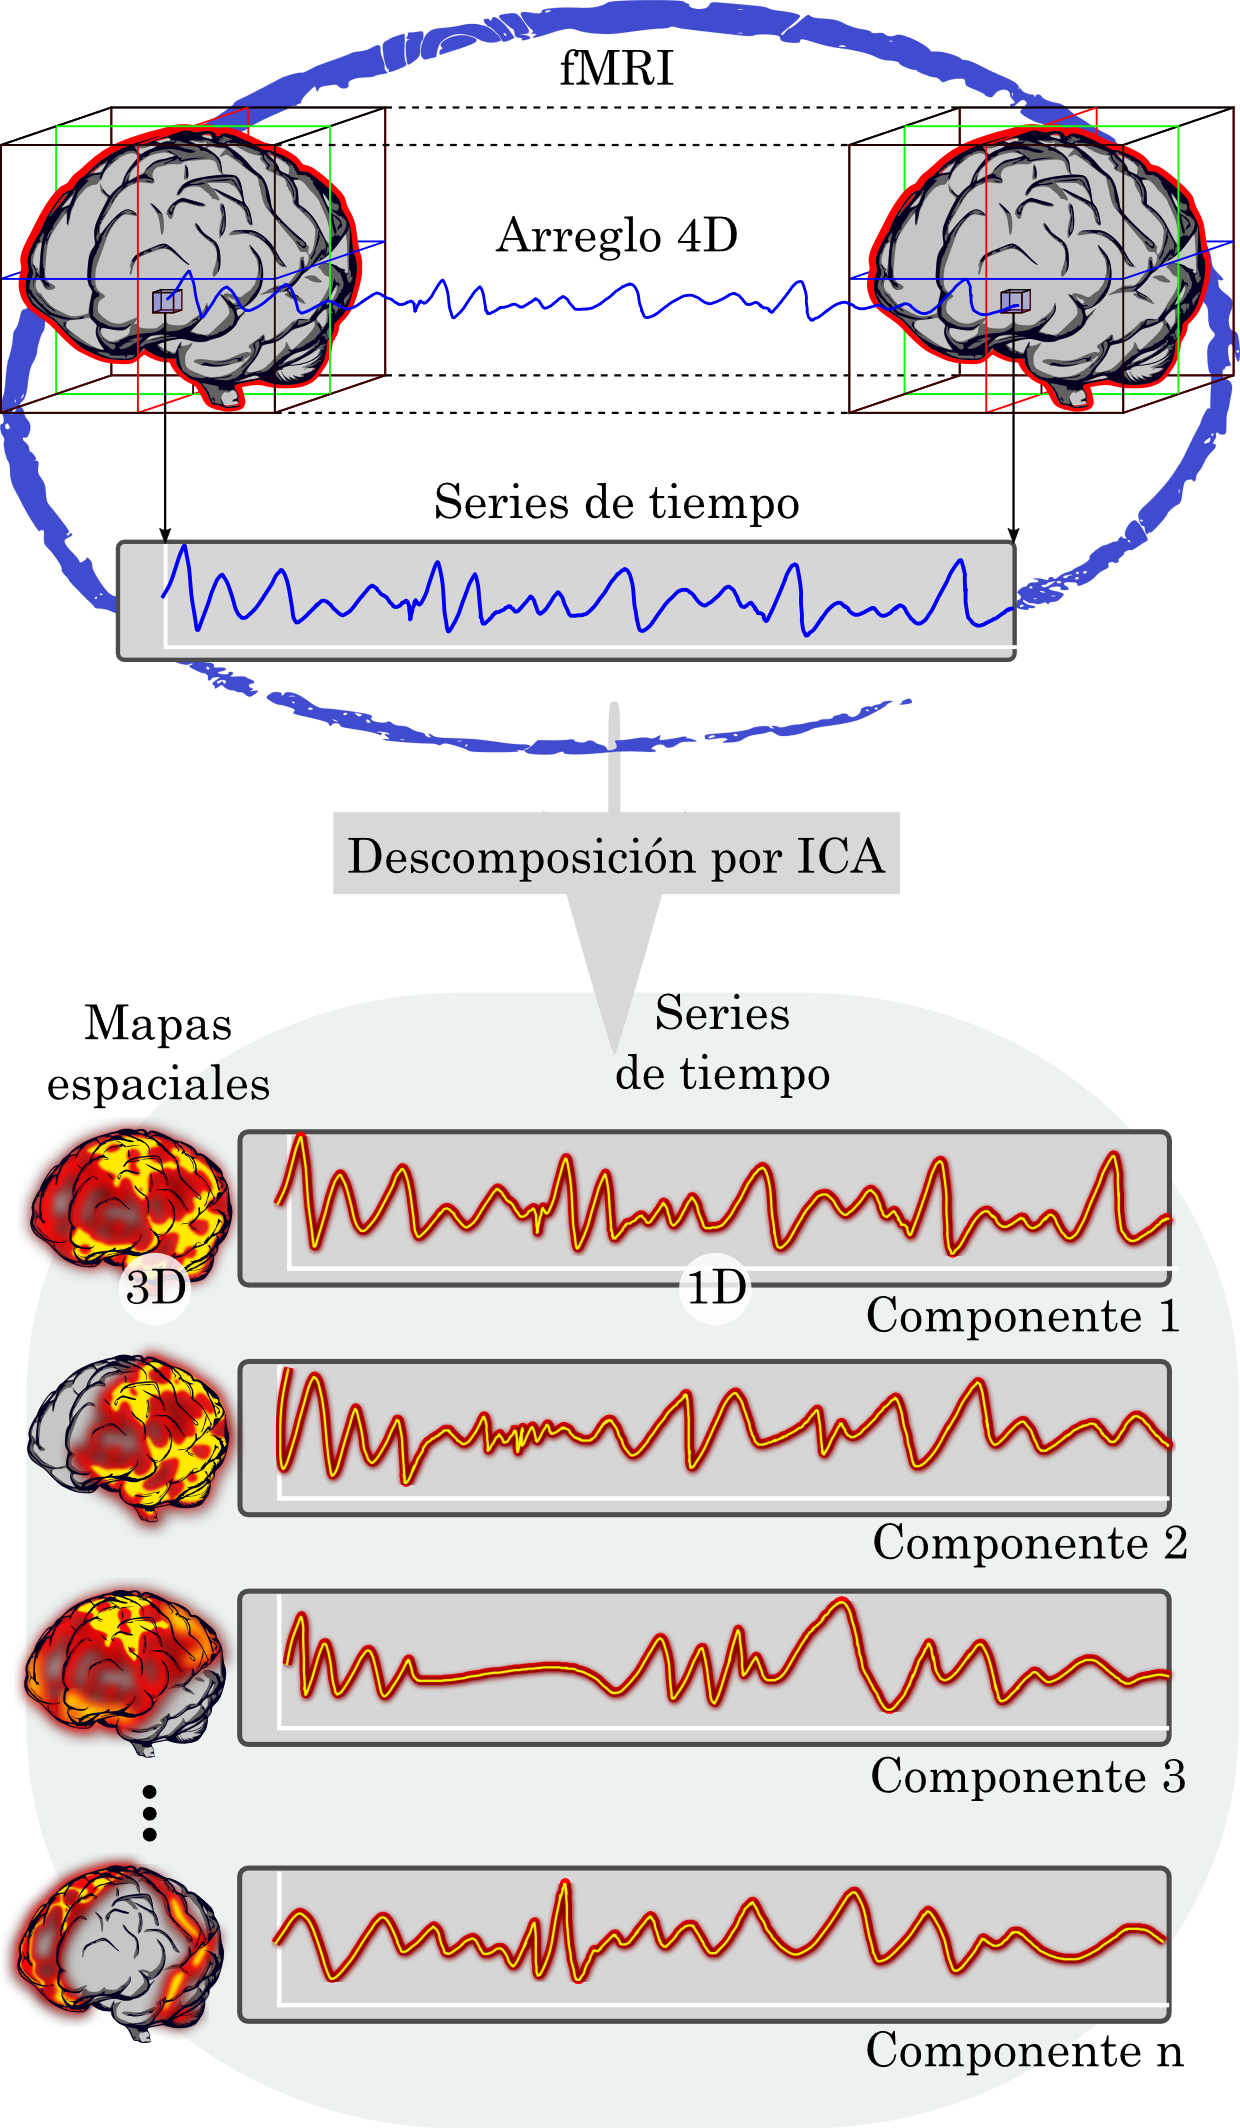 Representación de la descomposición por ICA en las componentes independientes de fMRI